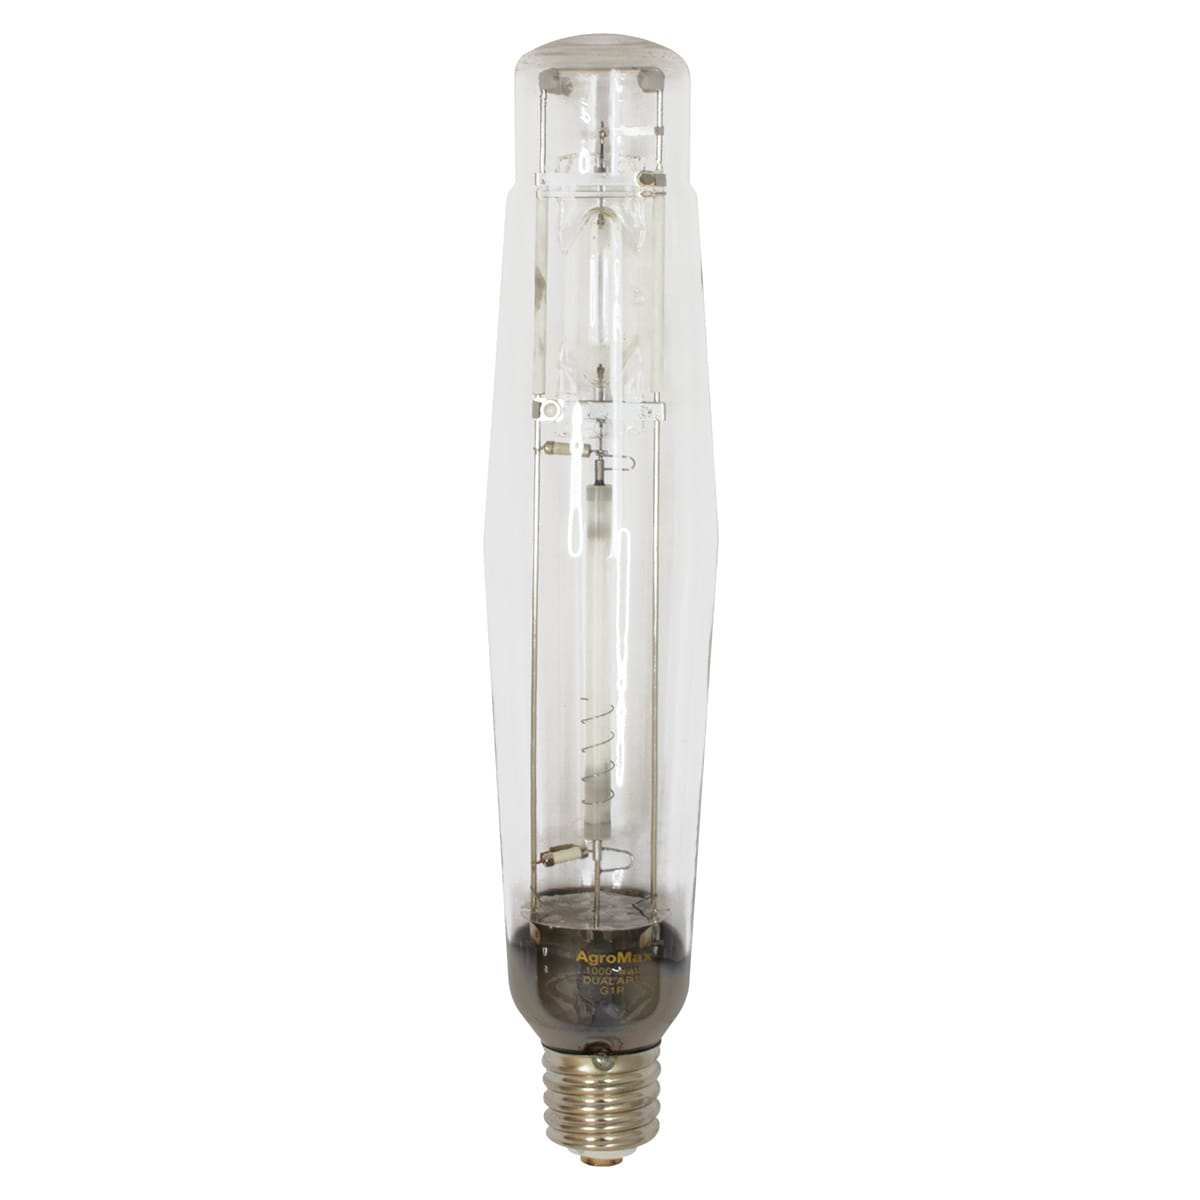 AgroMax 1000w Hybrid Bulb